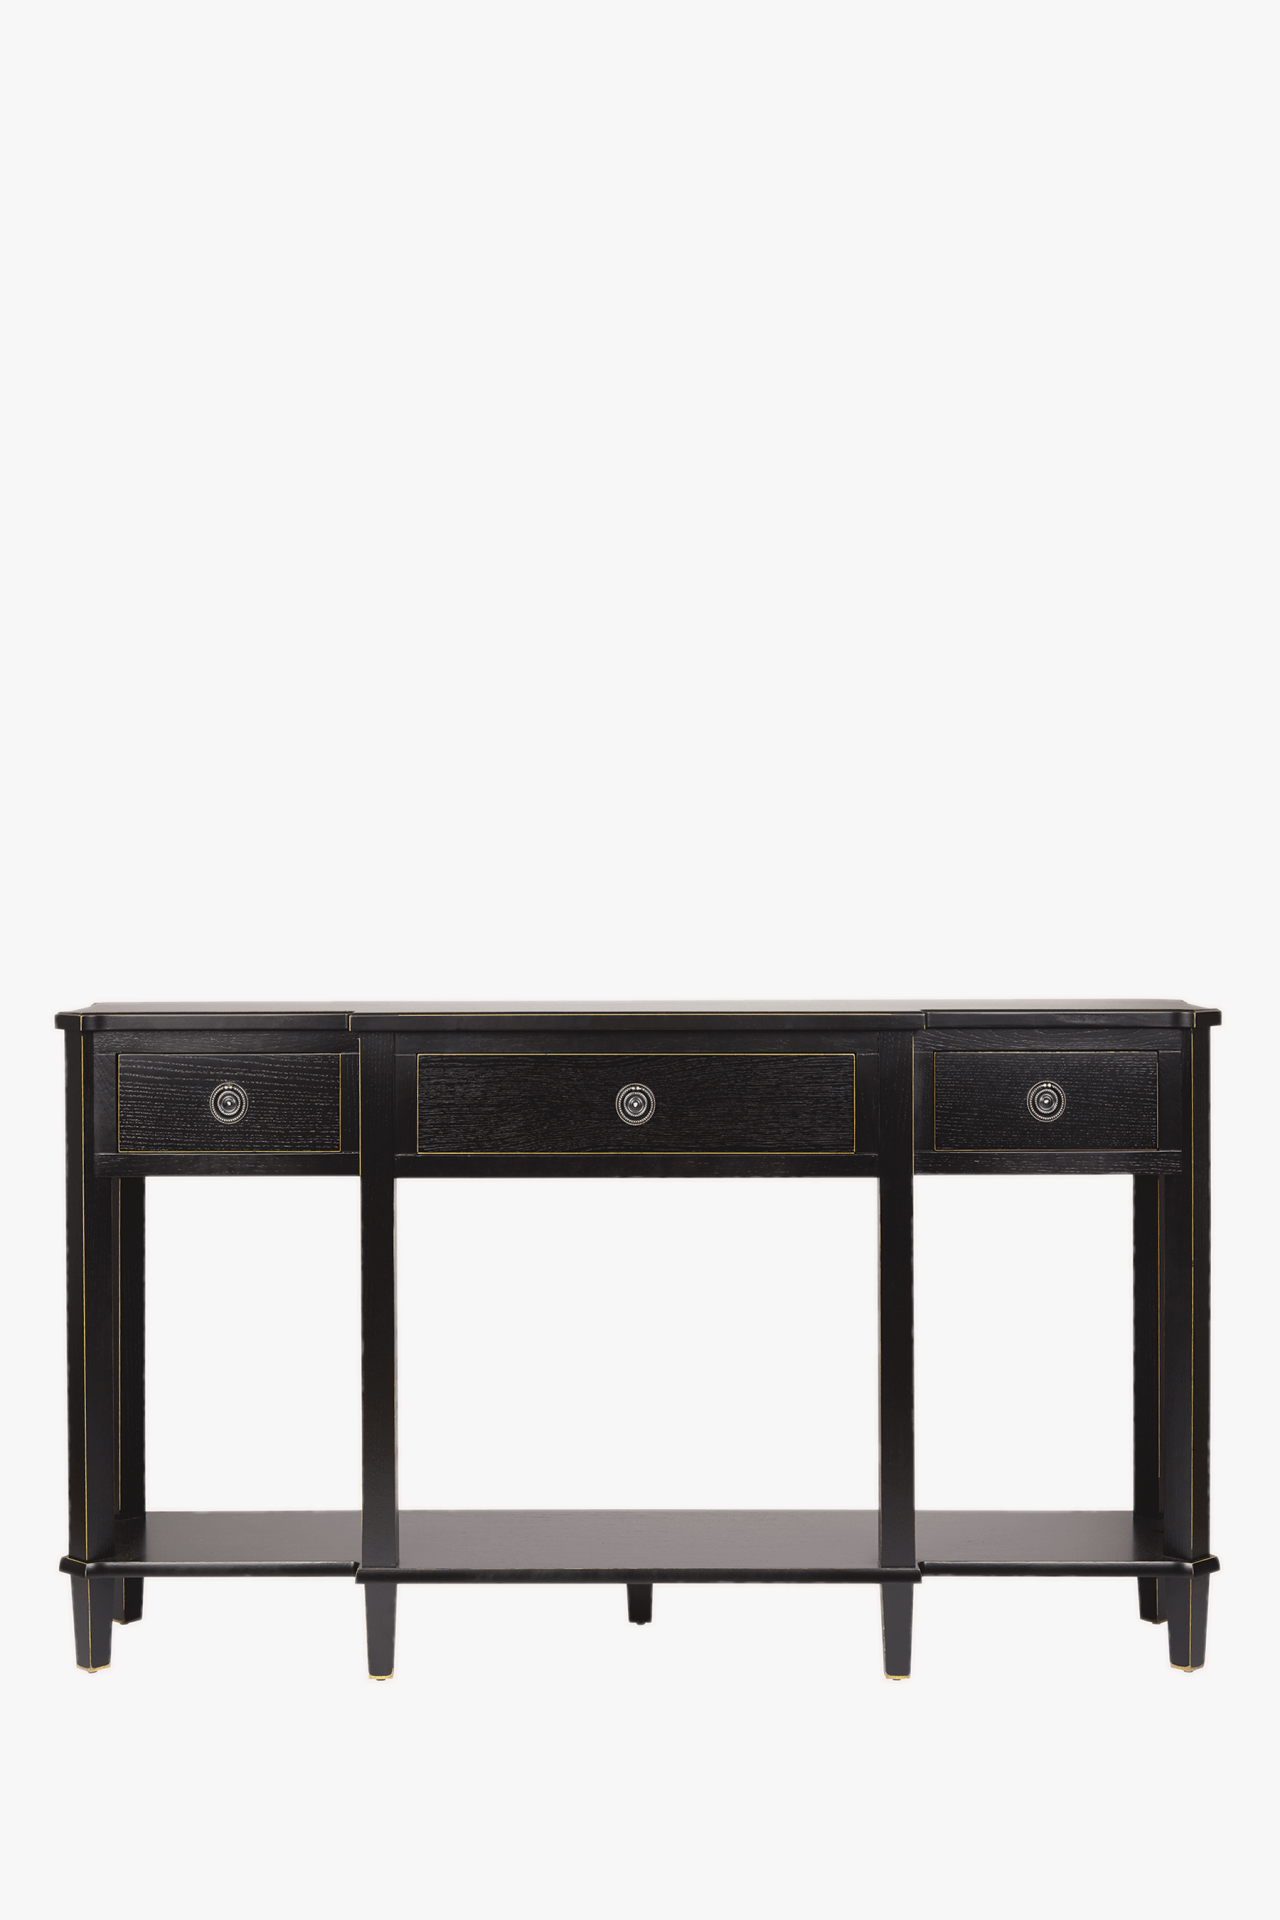 Henshaw 3 Drawer Triple Console Table (Black) – Qualita